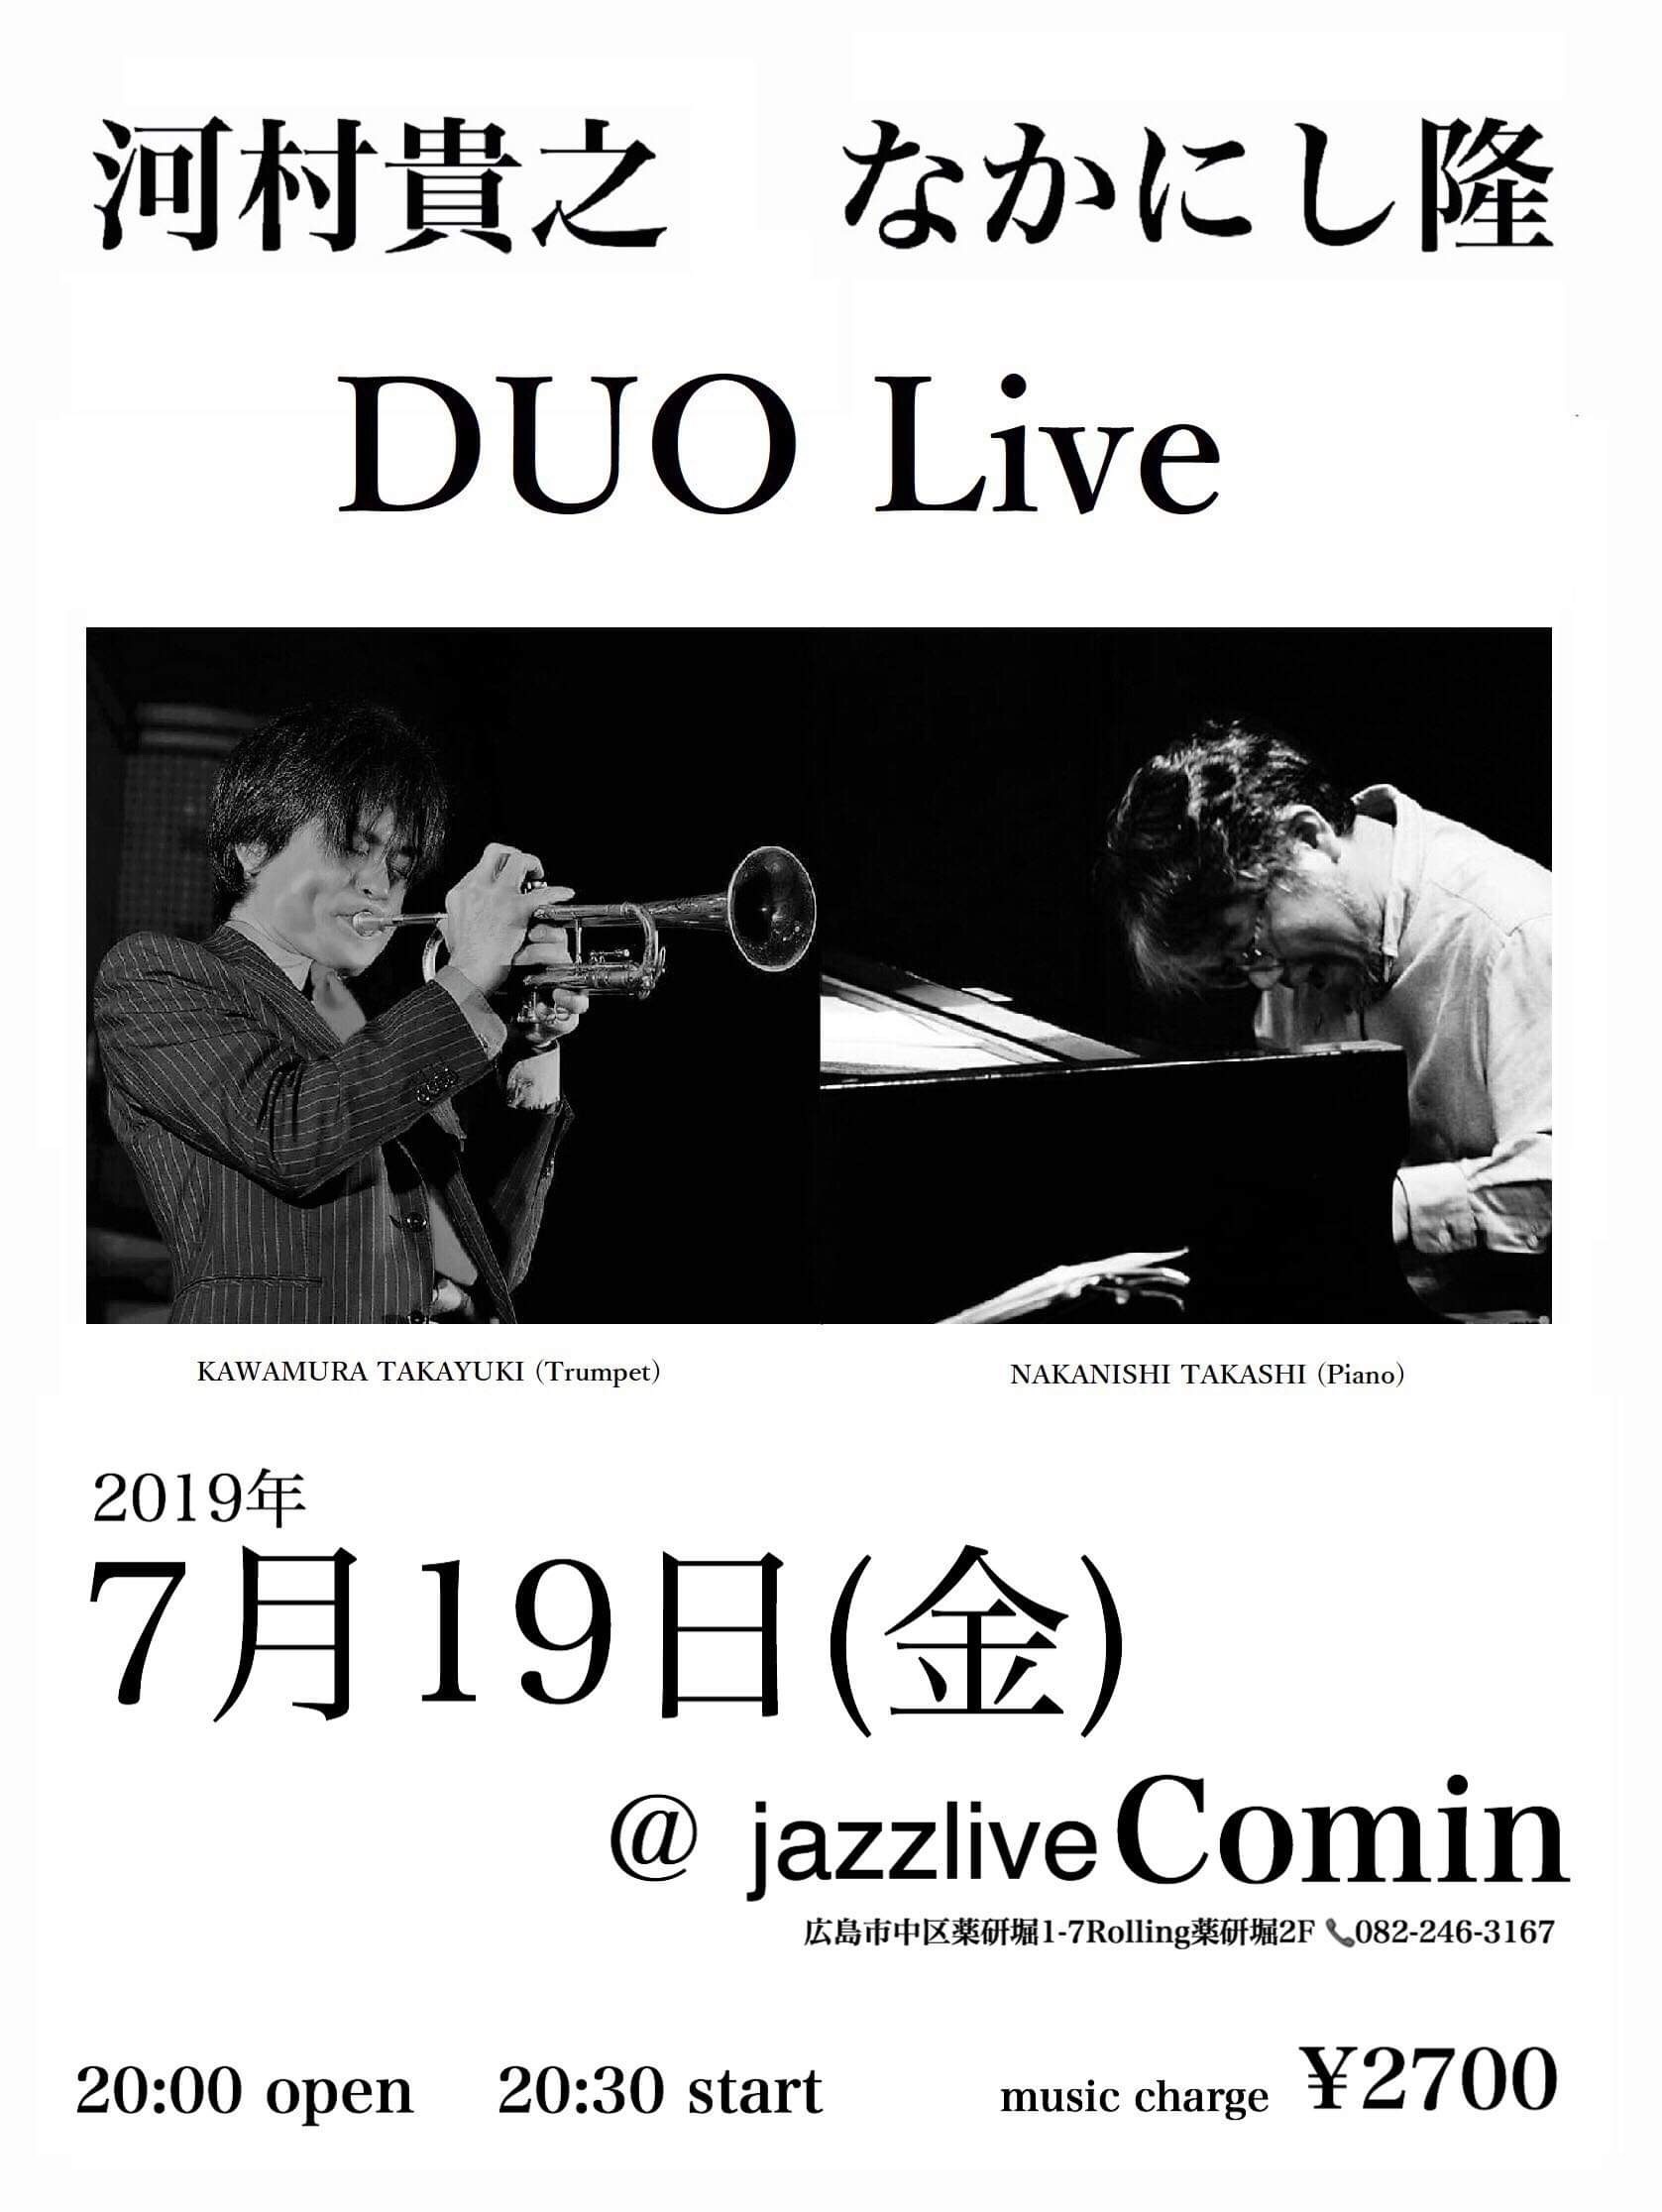 Jazzlive Comin 広島 明日19日金曜日のライブ_b0115606_10244180.jpeg